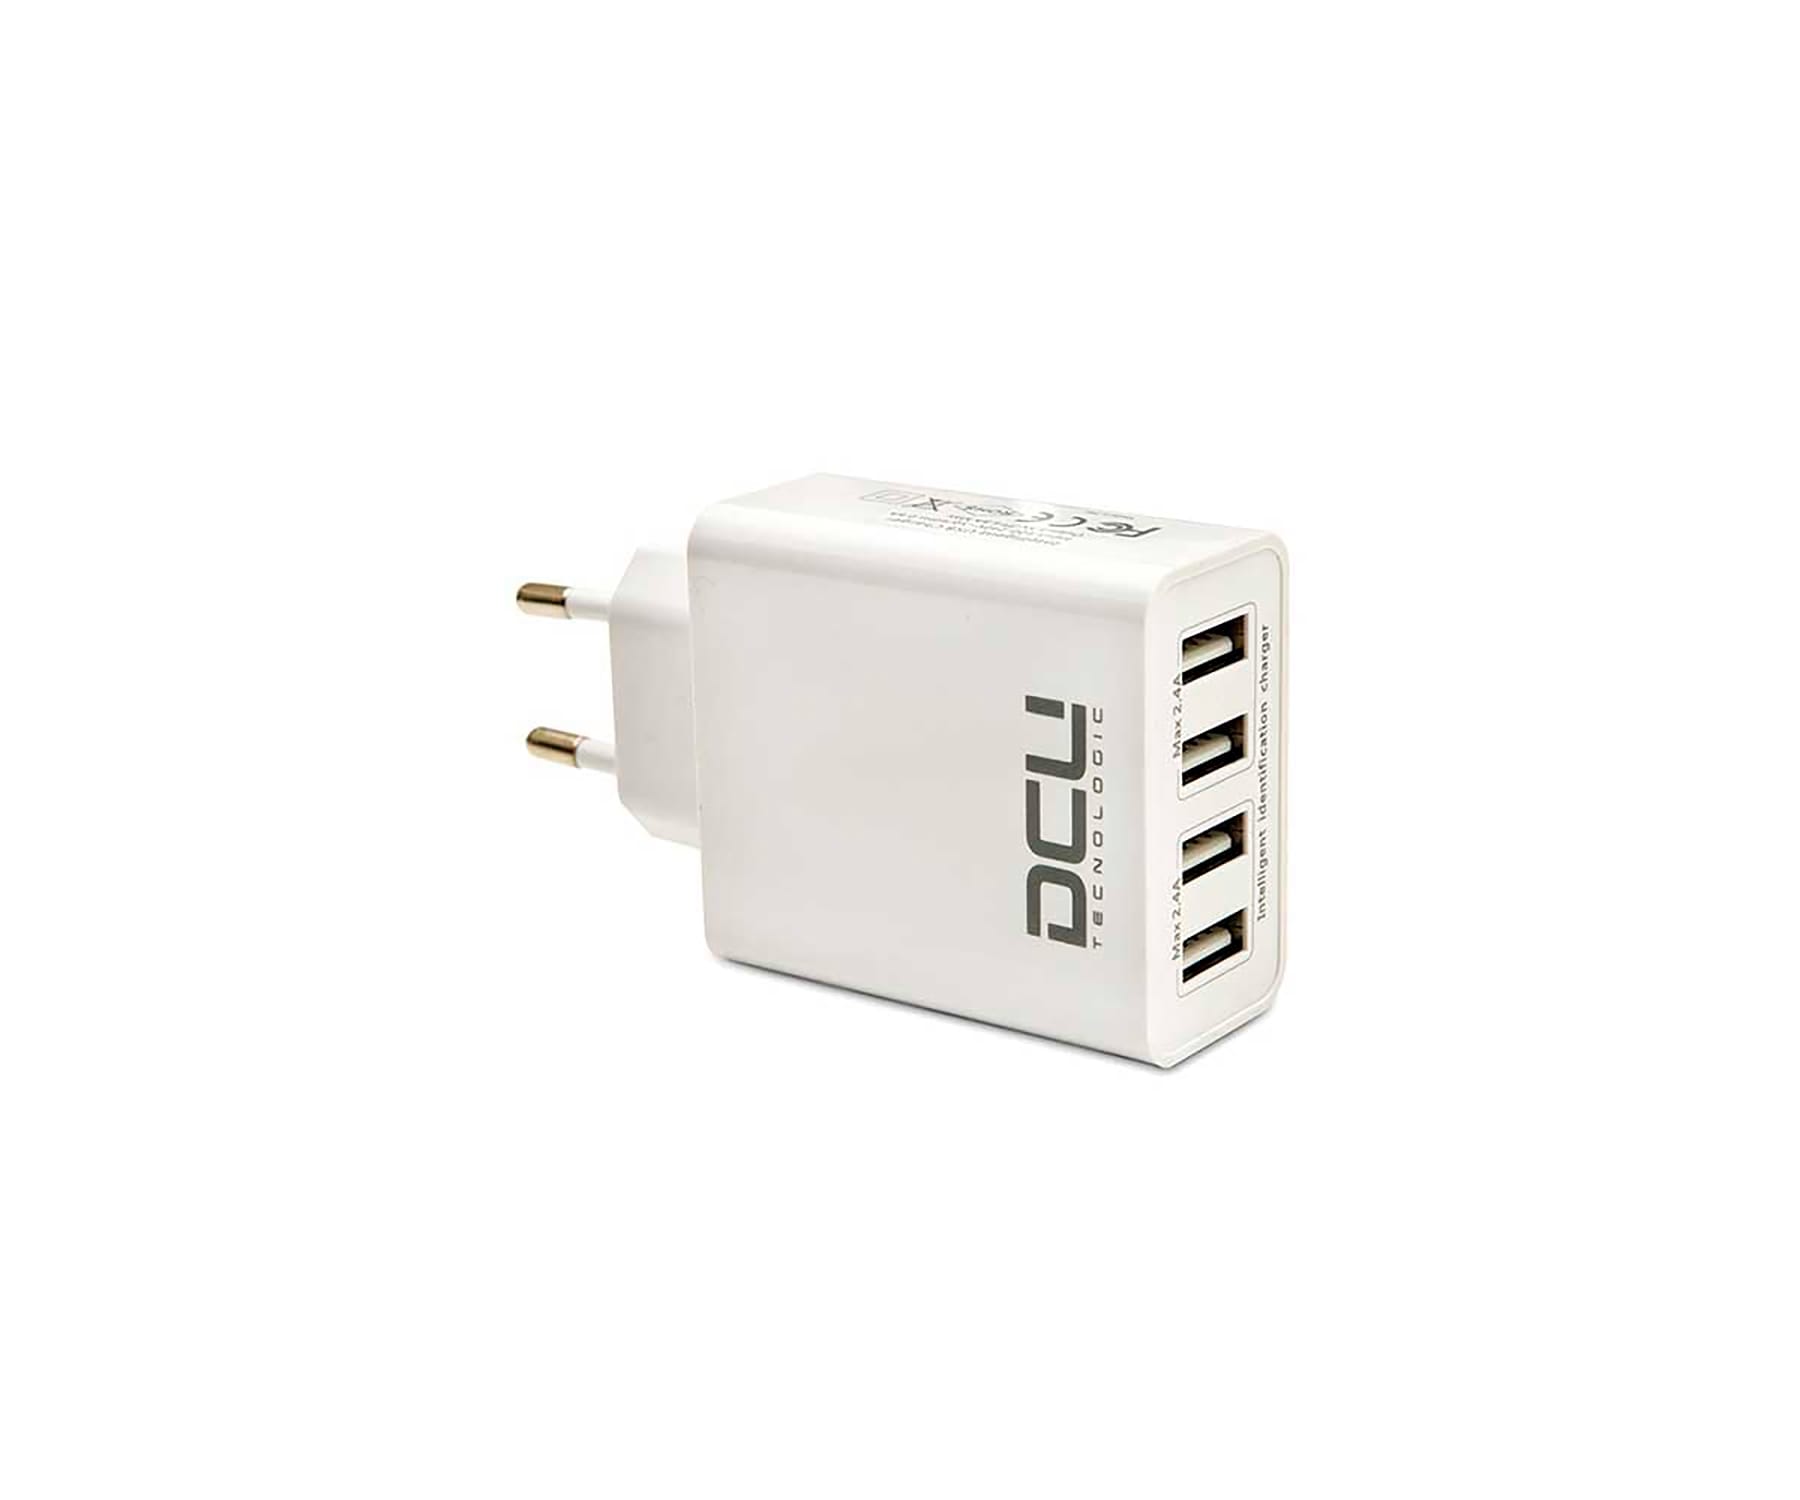 DCU 37300500 Blanco / Cargador de red eléctrica con 4x USB-A